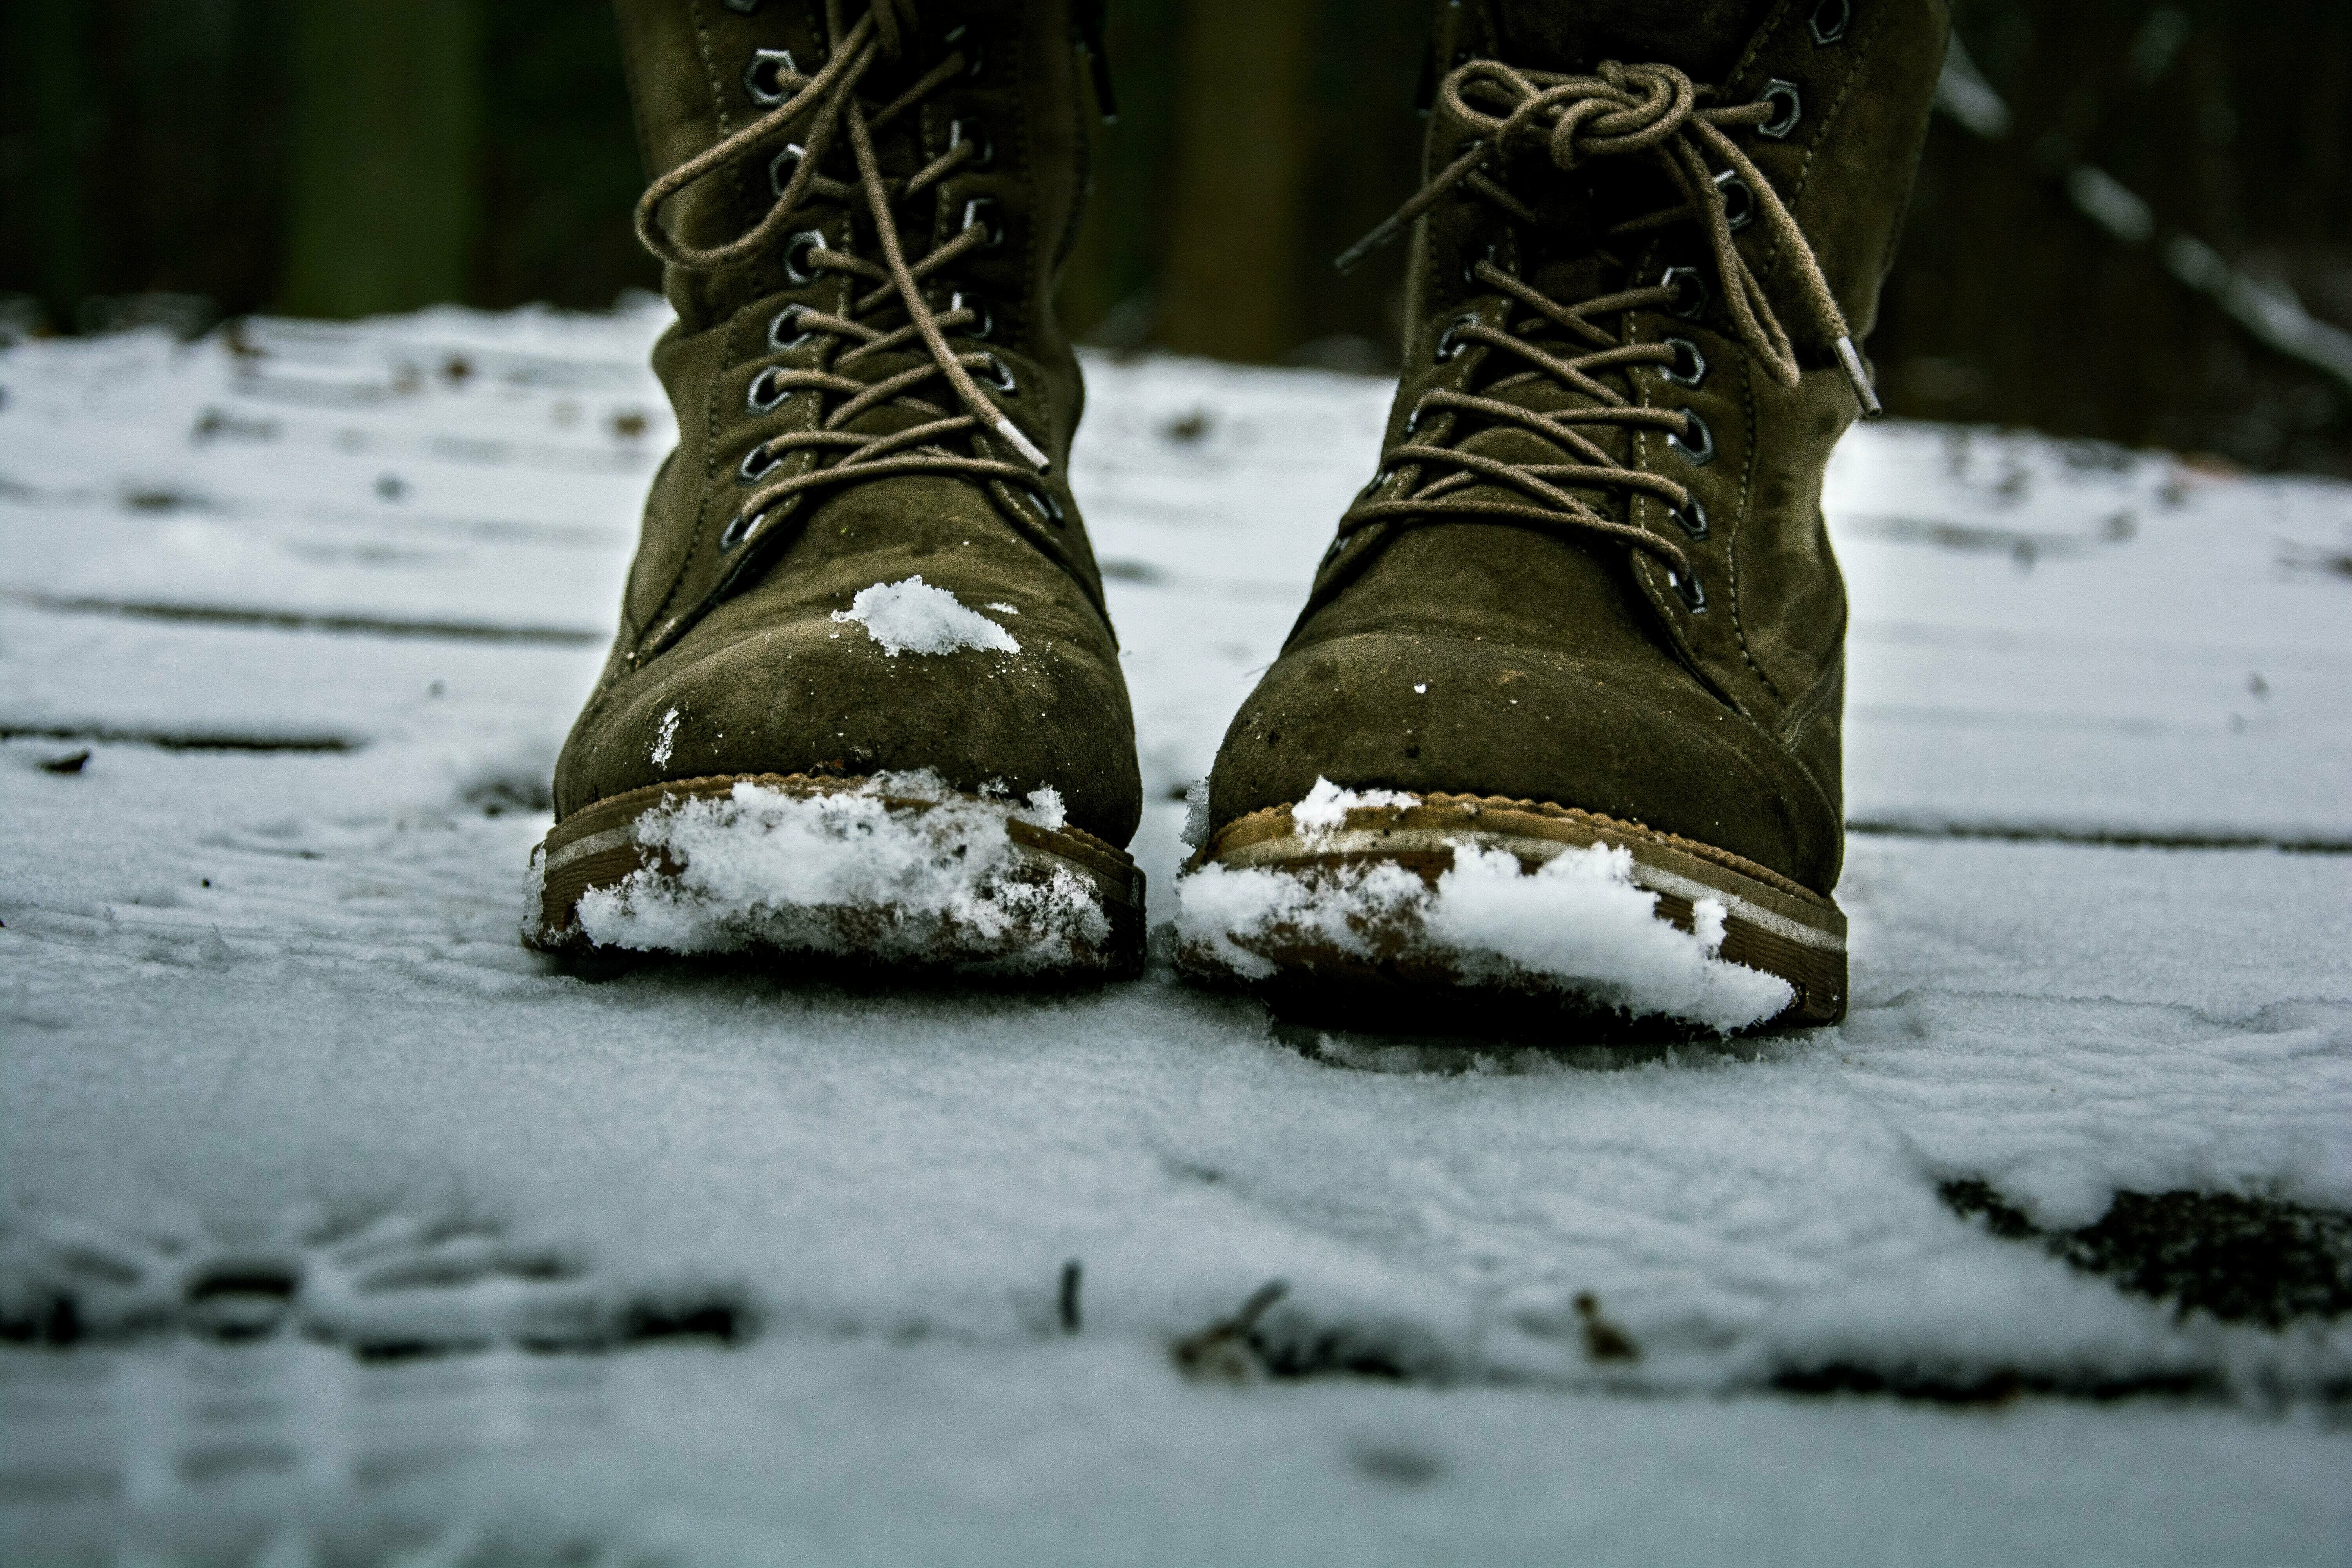 Ein mit Schnee behaftetes Schuhpaar auf einer schneebedeckten Fläche